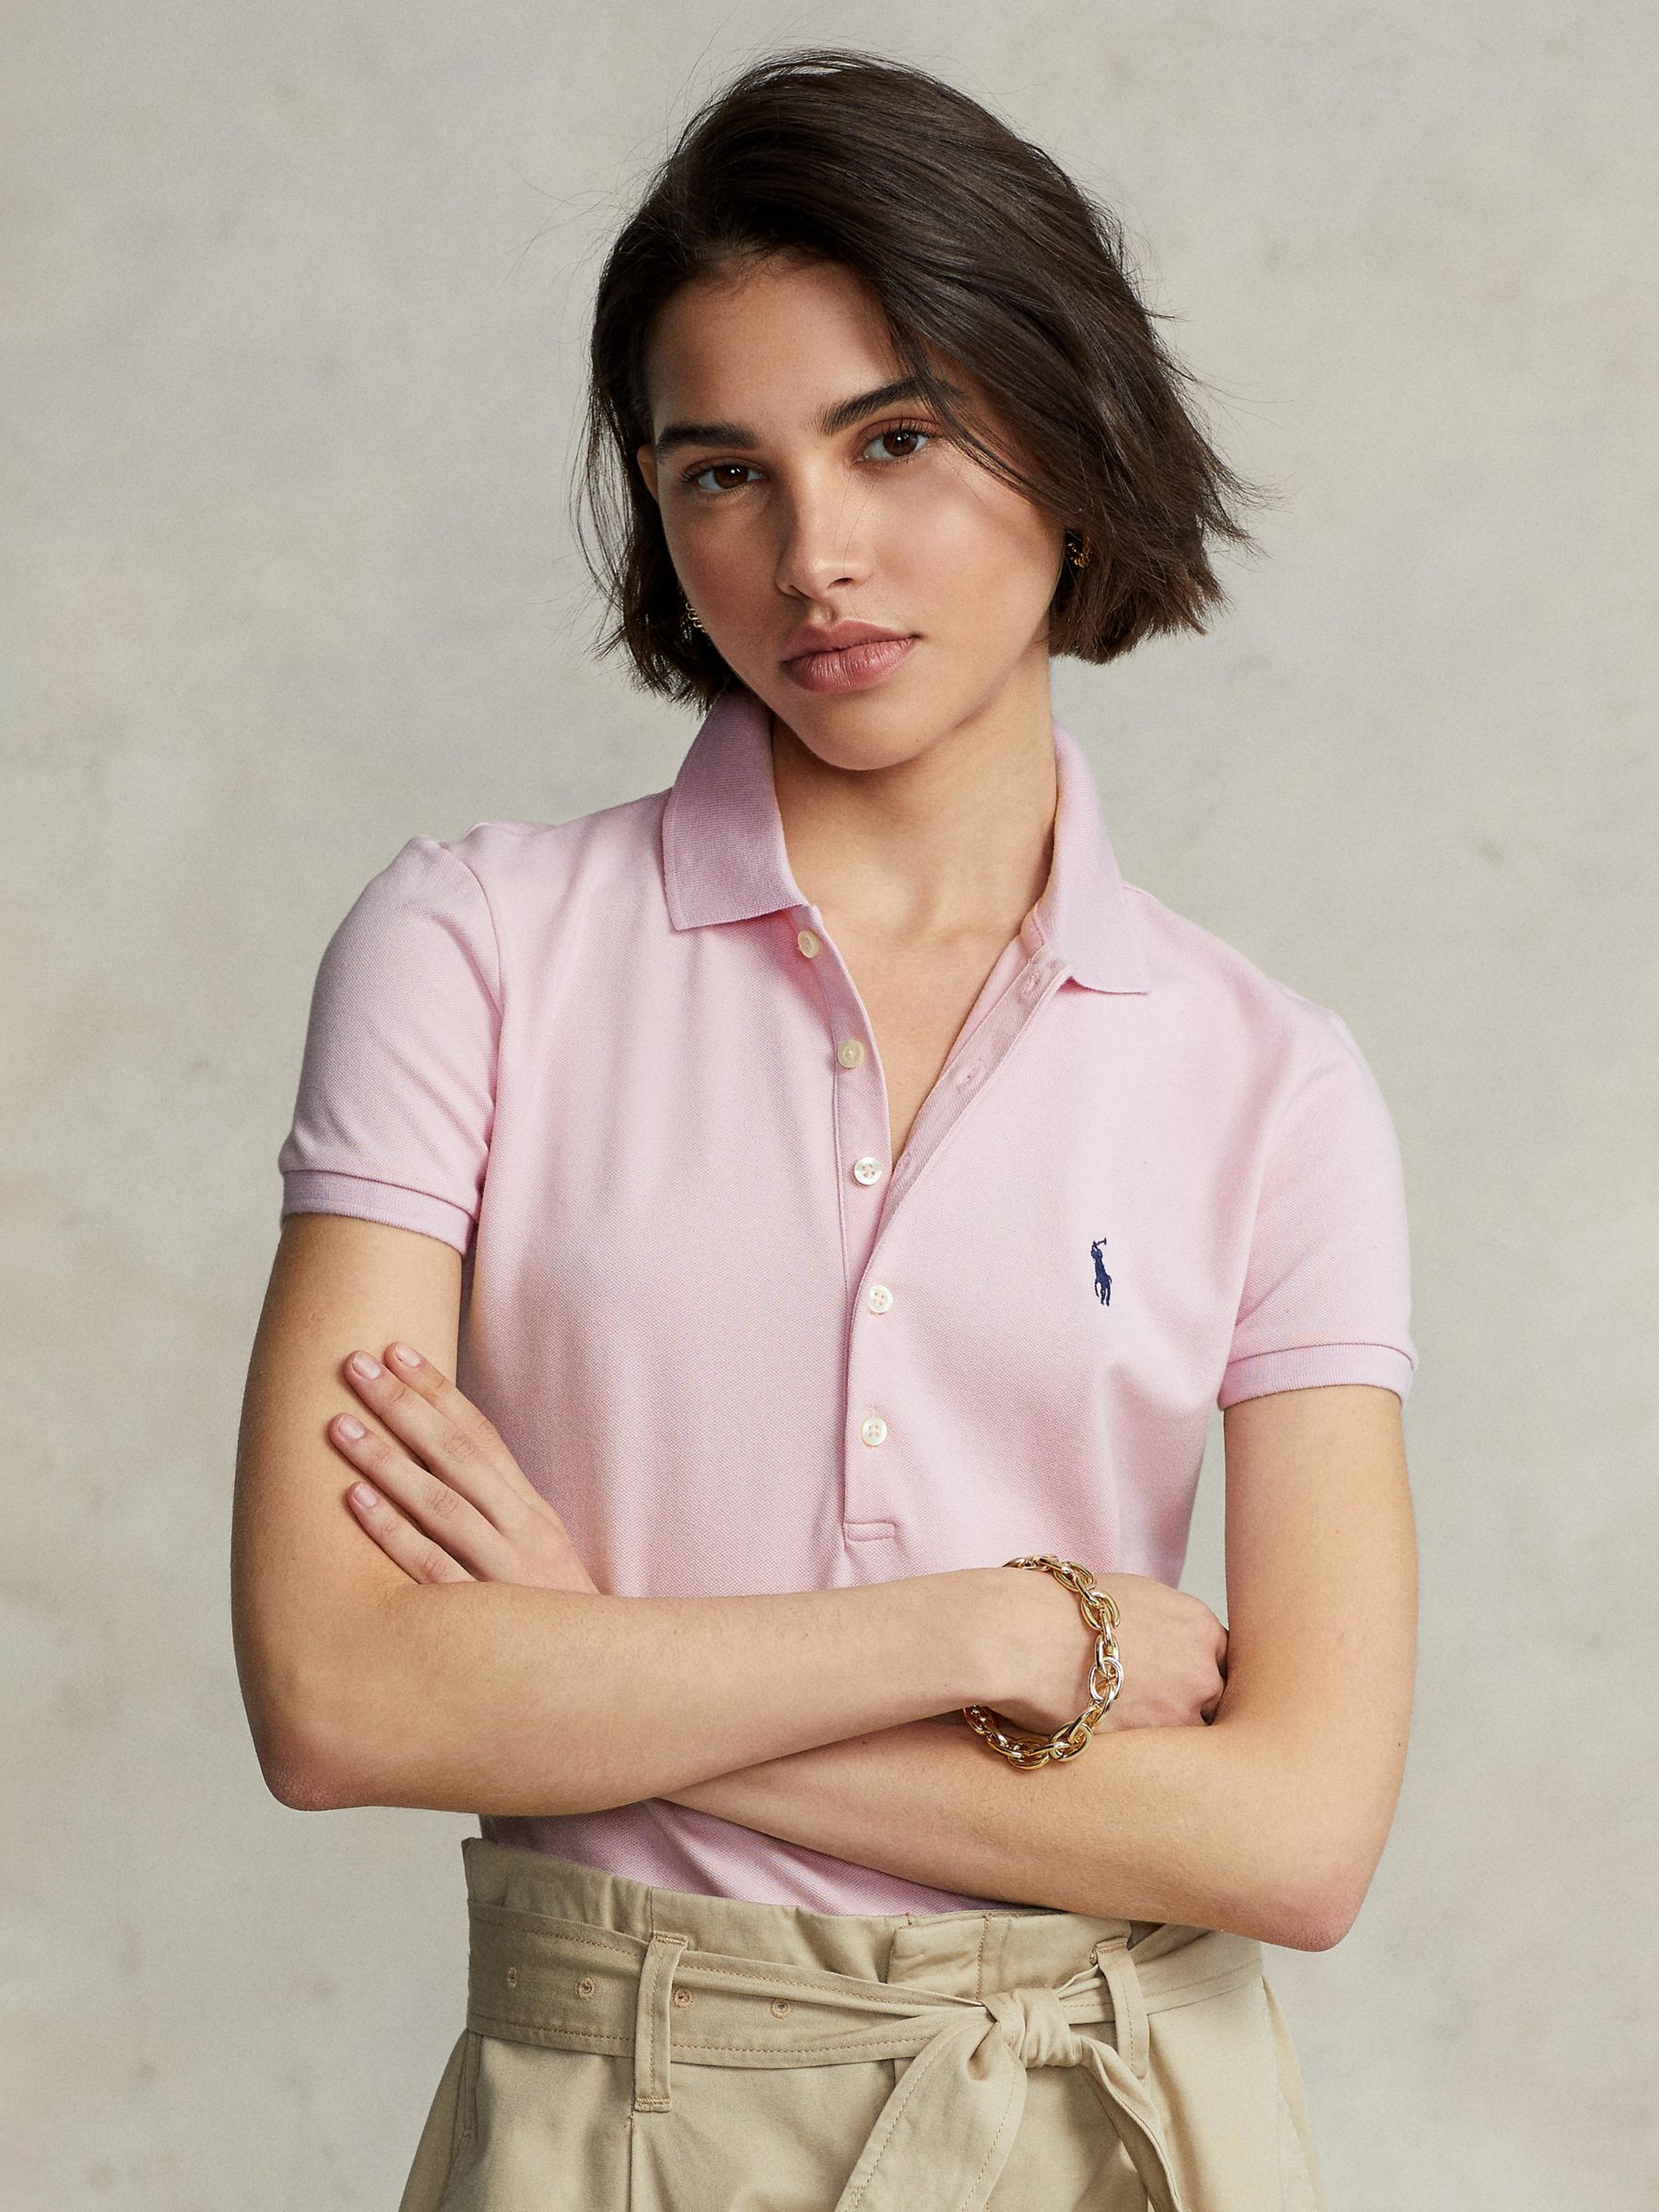 Women's Shirts & Tops - Polo Ralph Lauren